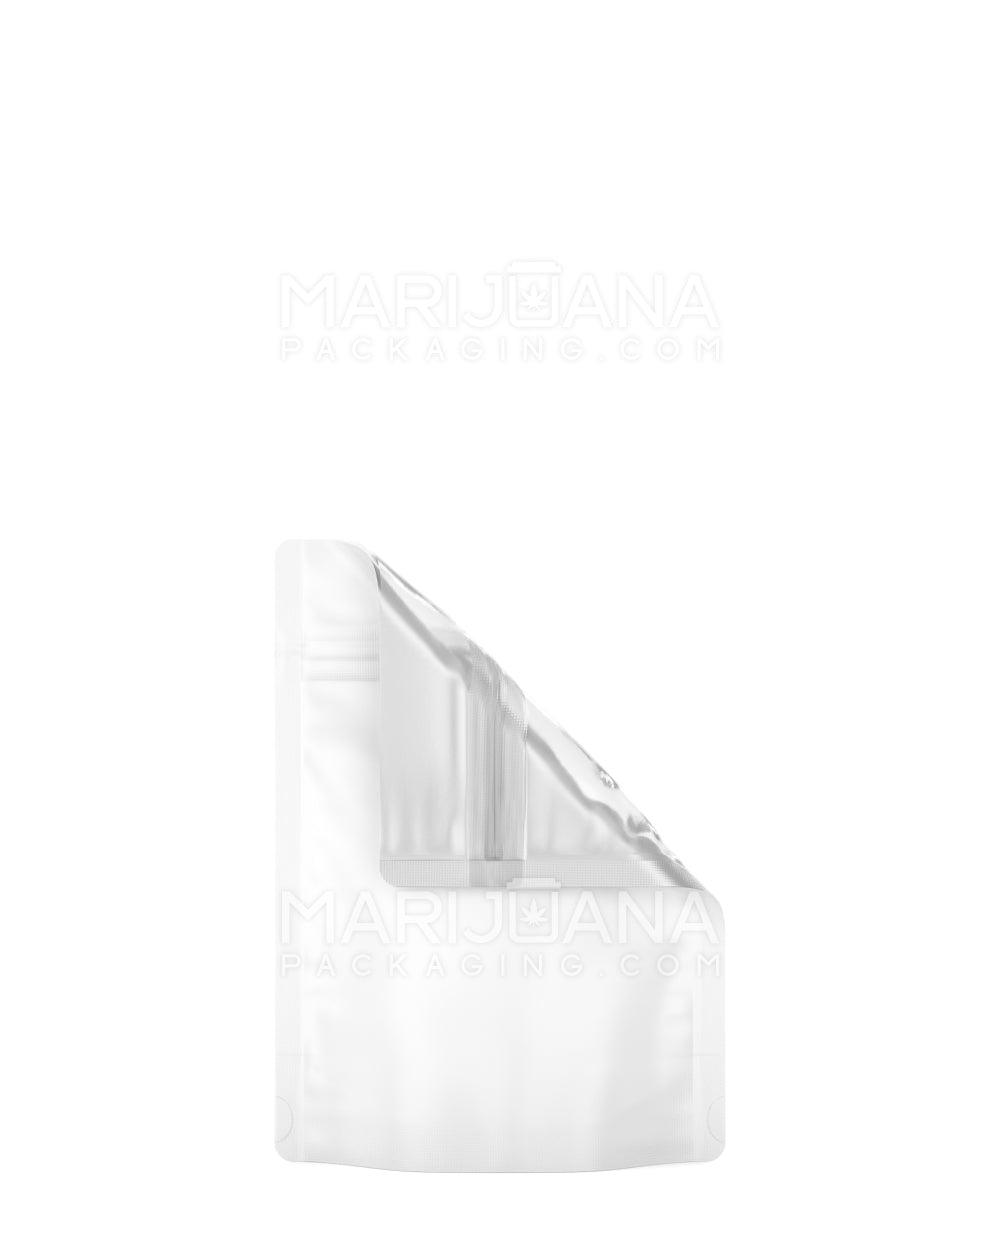 Tamper Evident Glossy White Vista Mylar Bags | 3.6in x 5in - 3.5g | Sample - 1